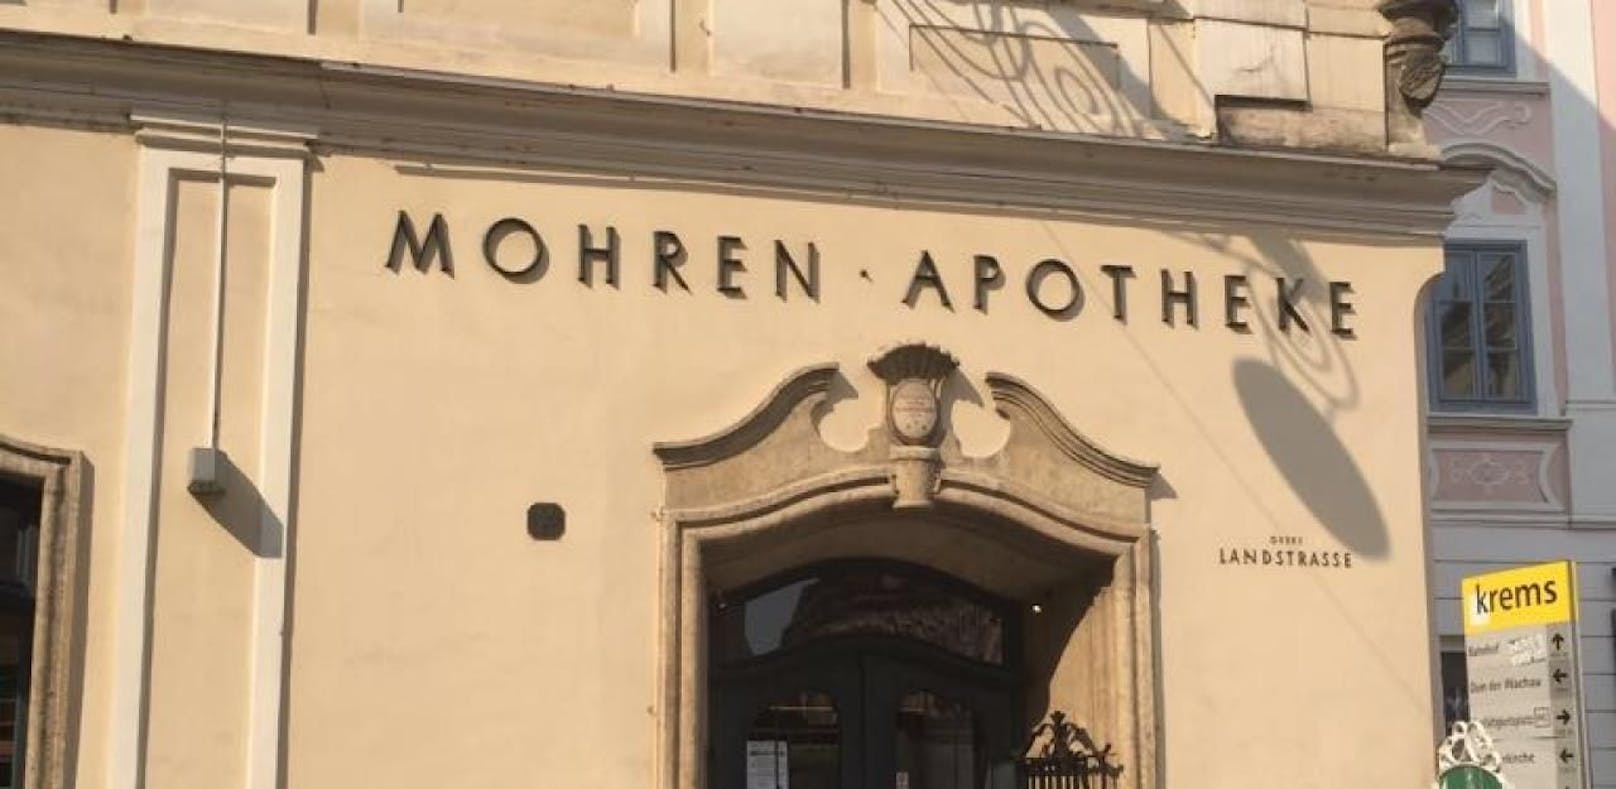 Die Mohrenapotheke in Krems